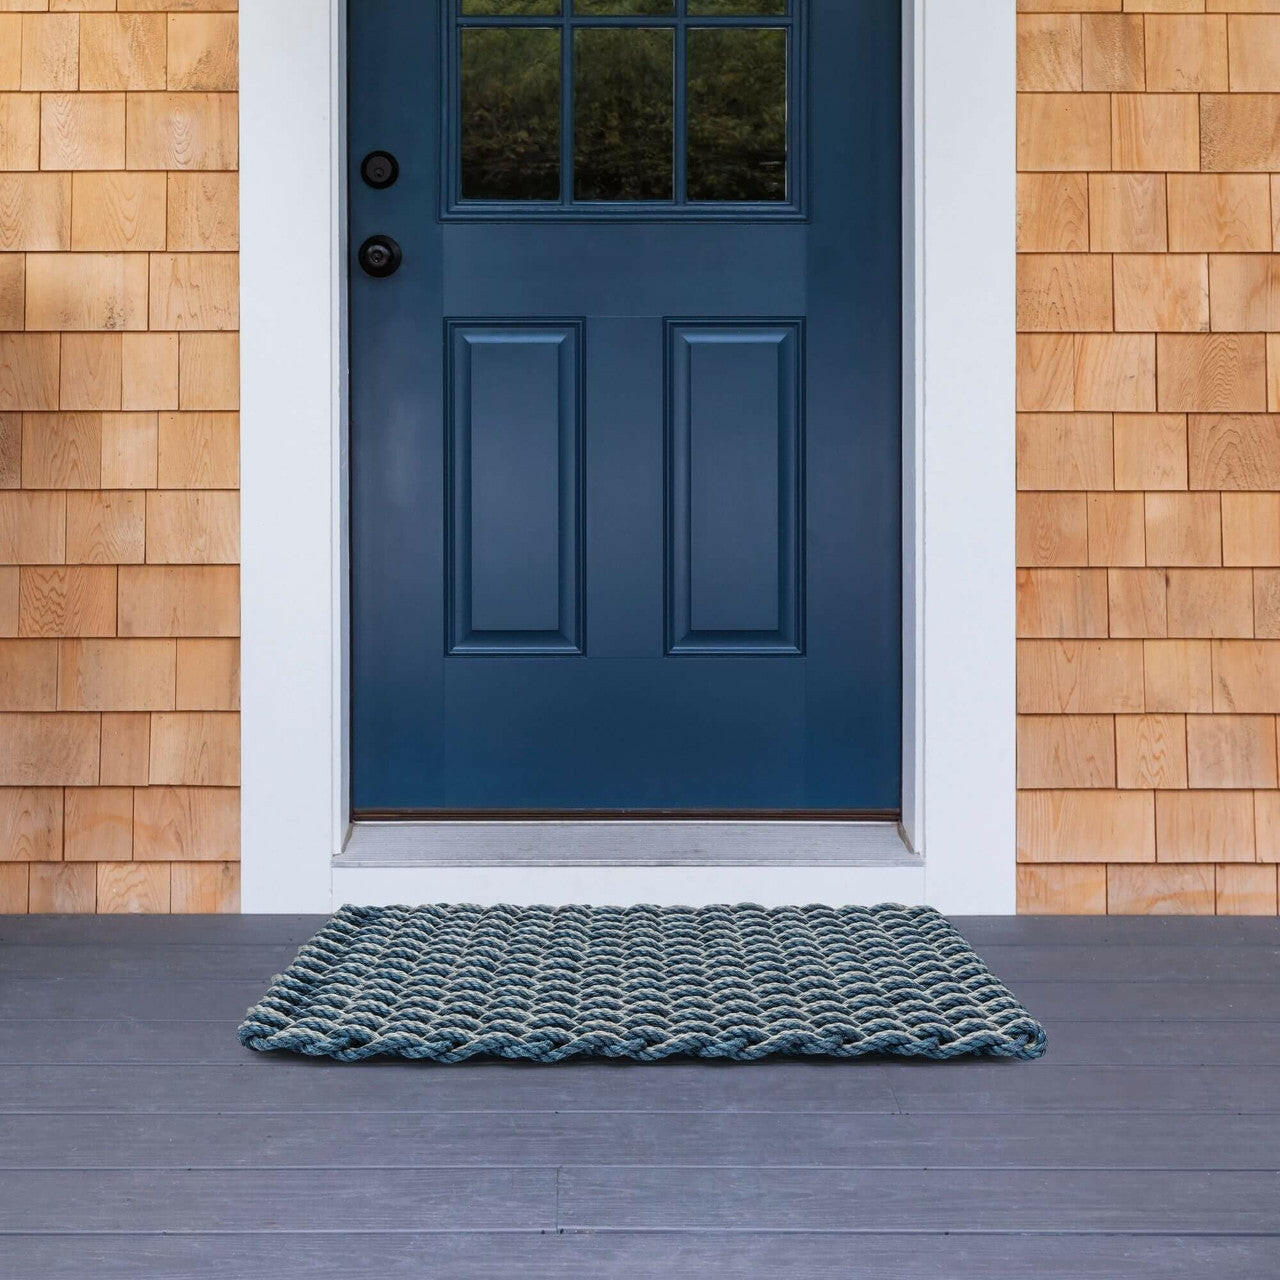 Lobster Rope Doormat, Made in Maine Rope Door Mat, Navy & Silver